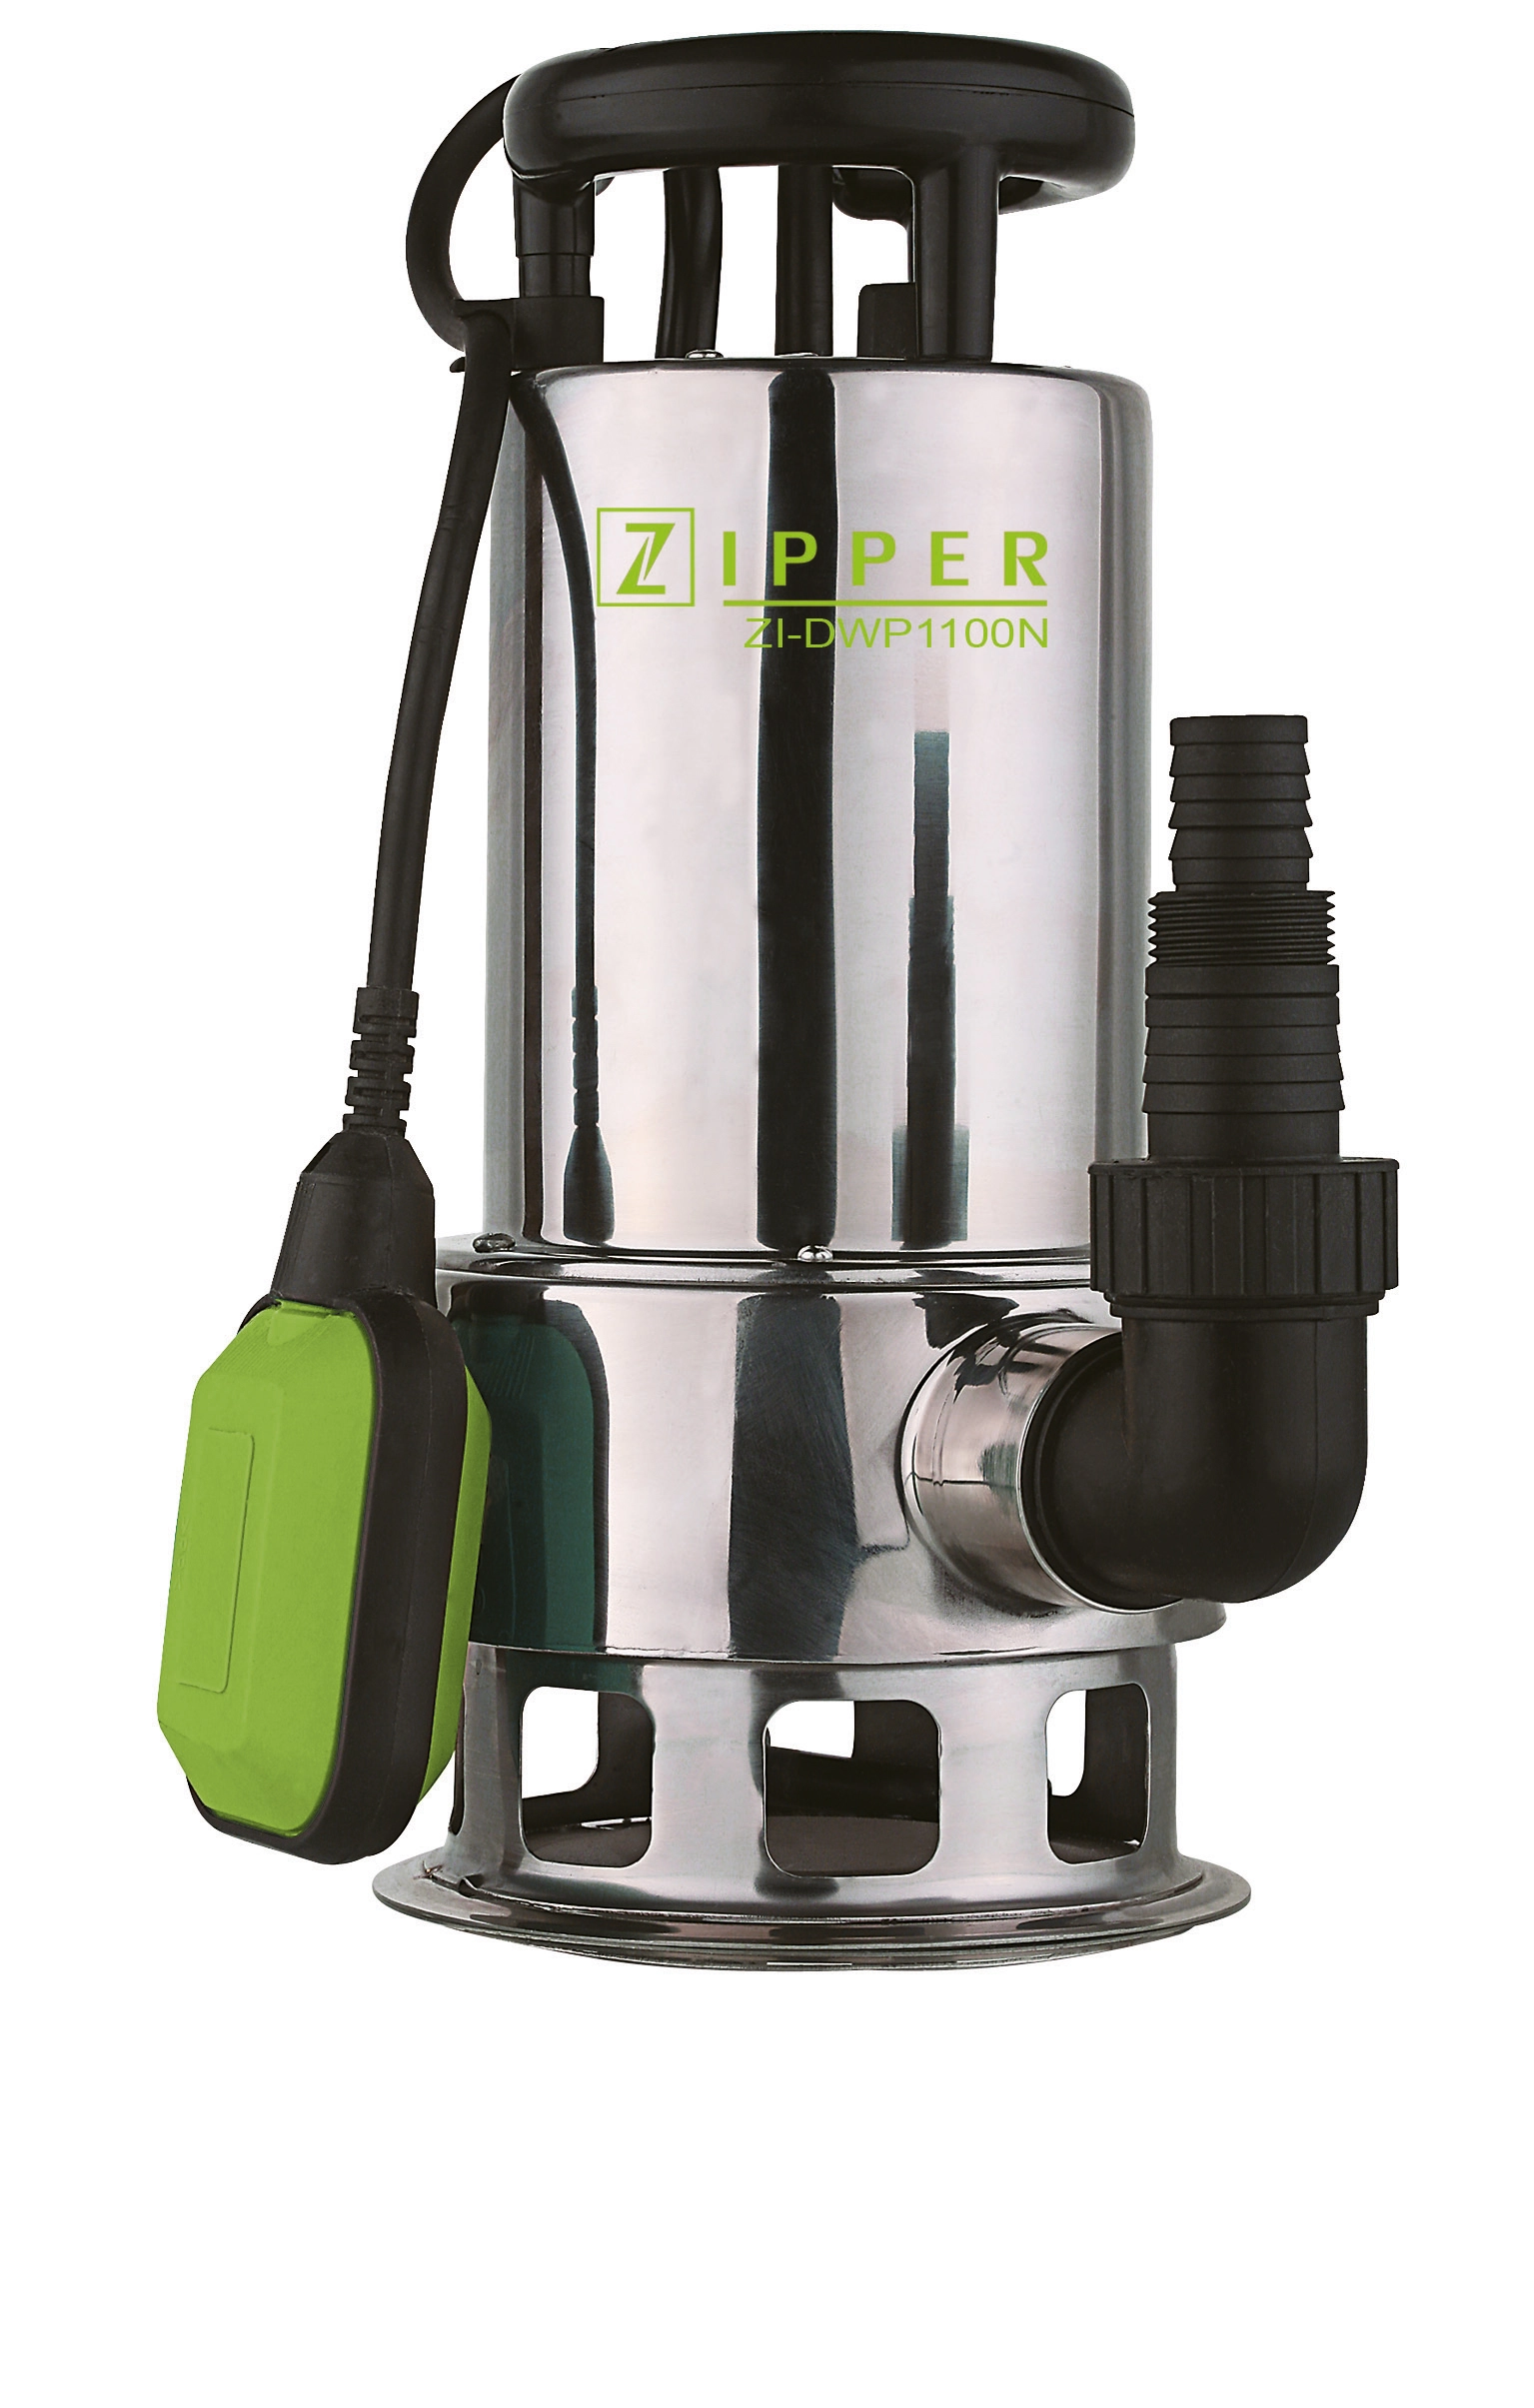 Zipper Schmutzwasser Tauchpumpe ZI-DWP1100N kaufen bei OBI